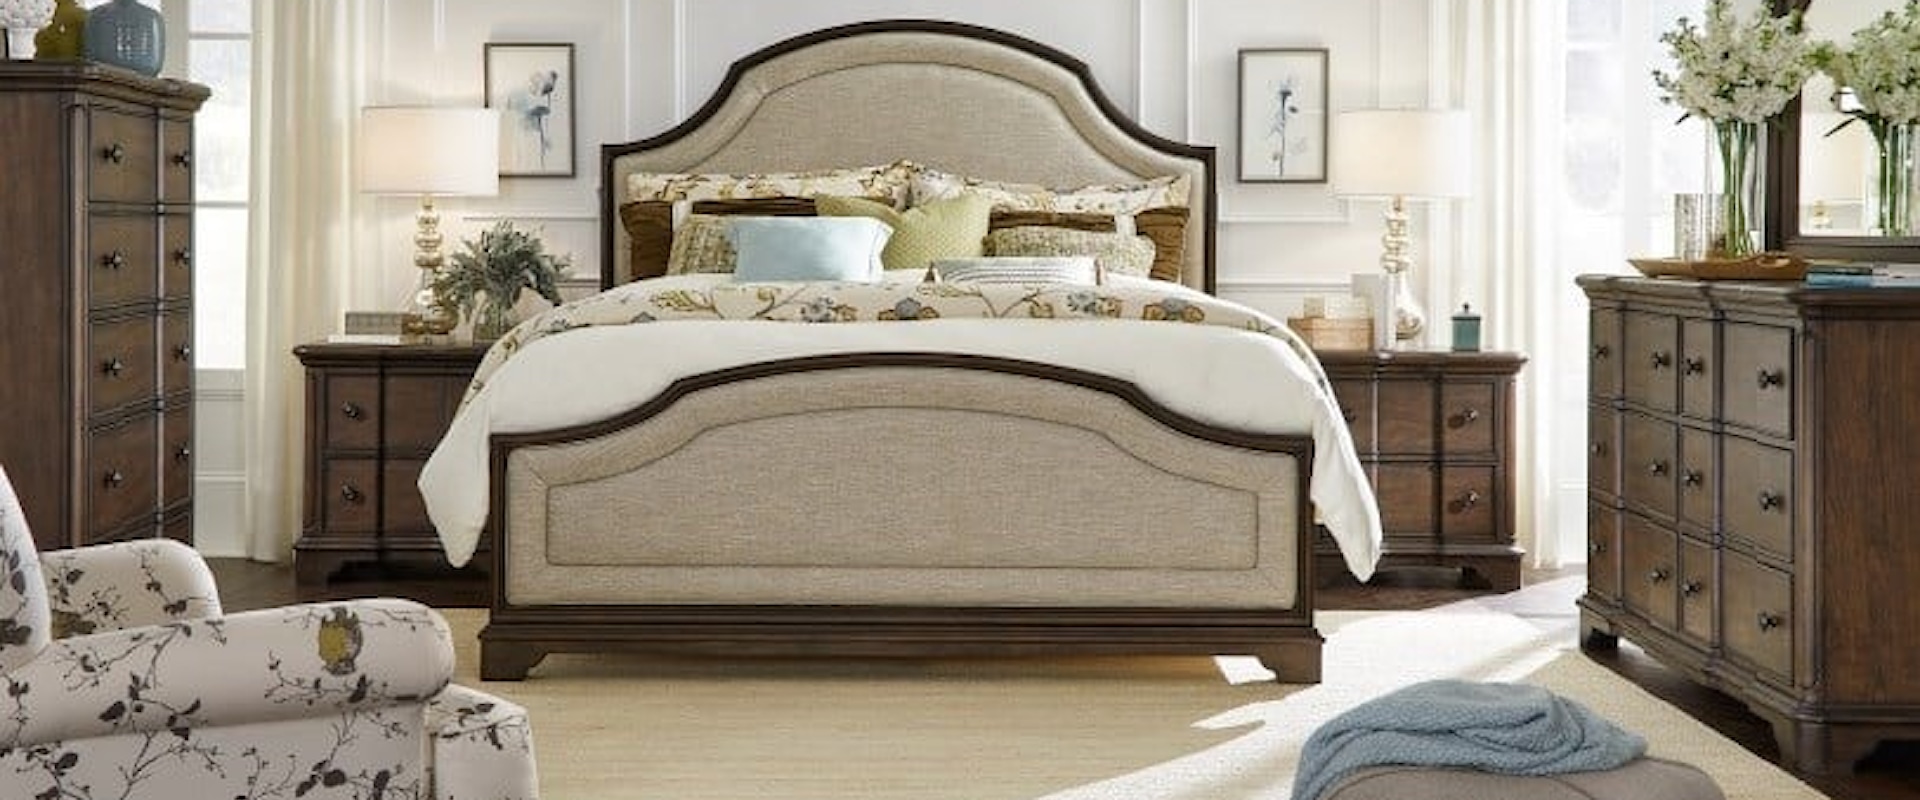 Queen Bed, Dresser, Nightstand